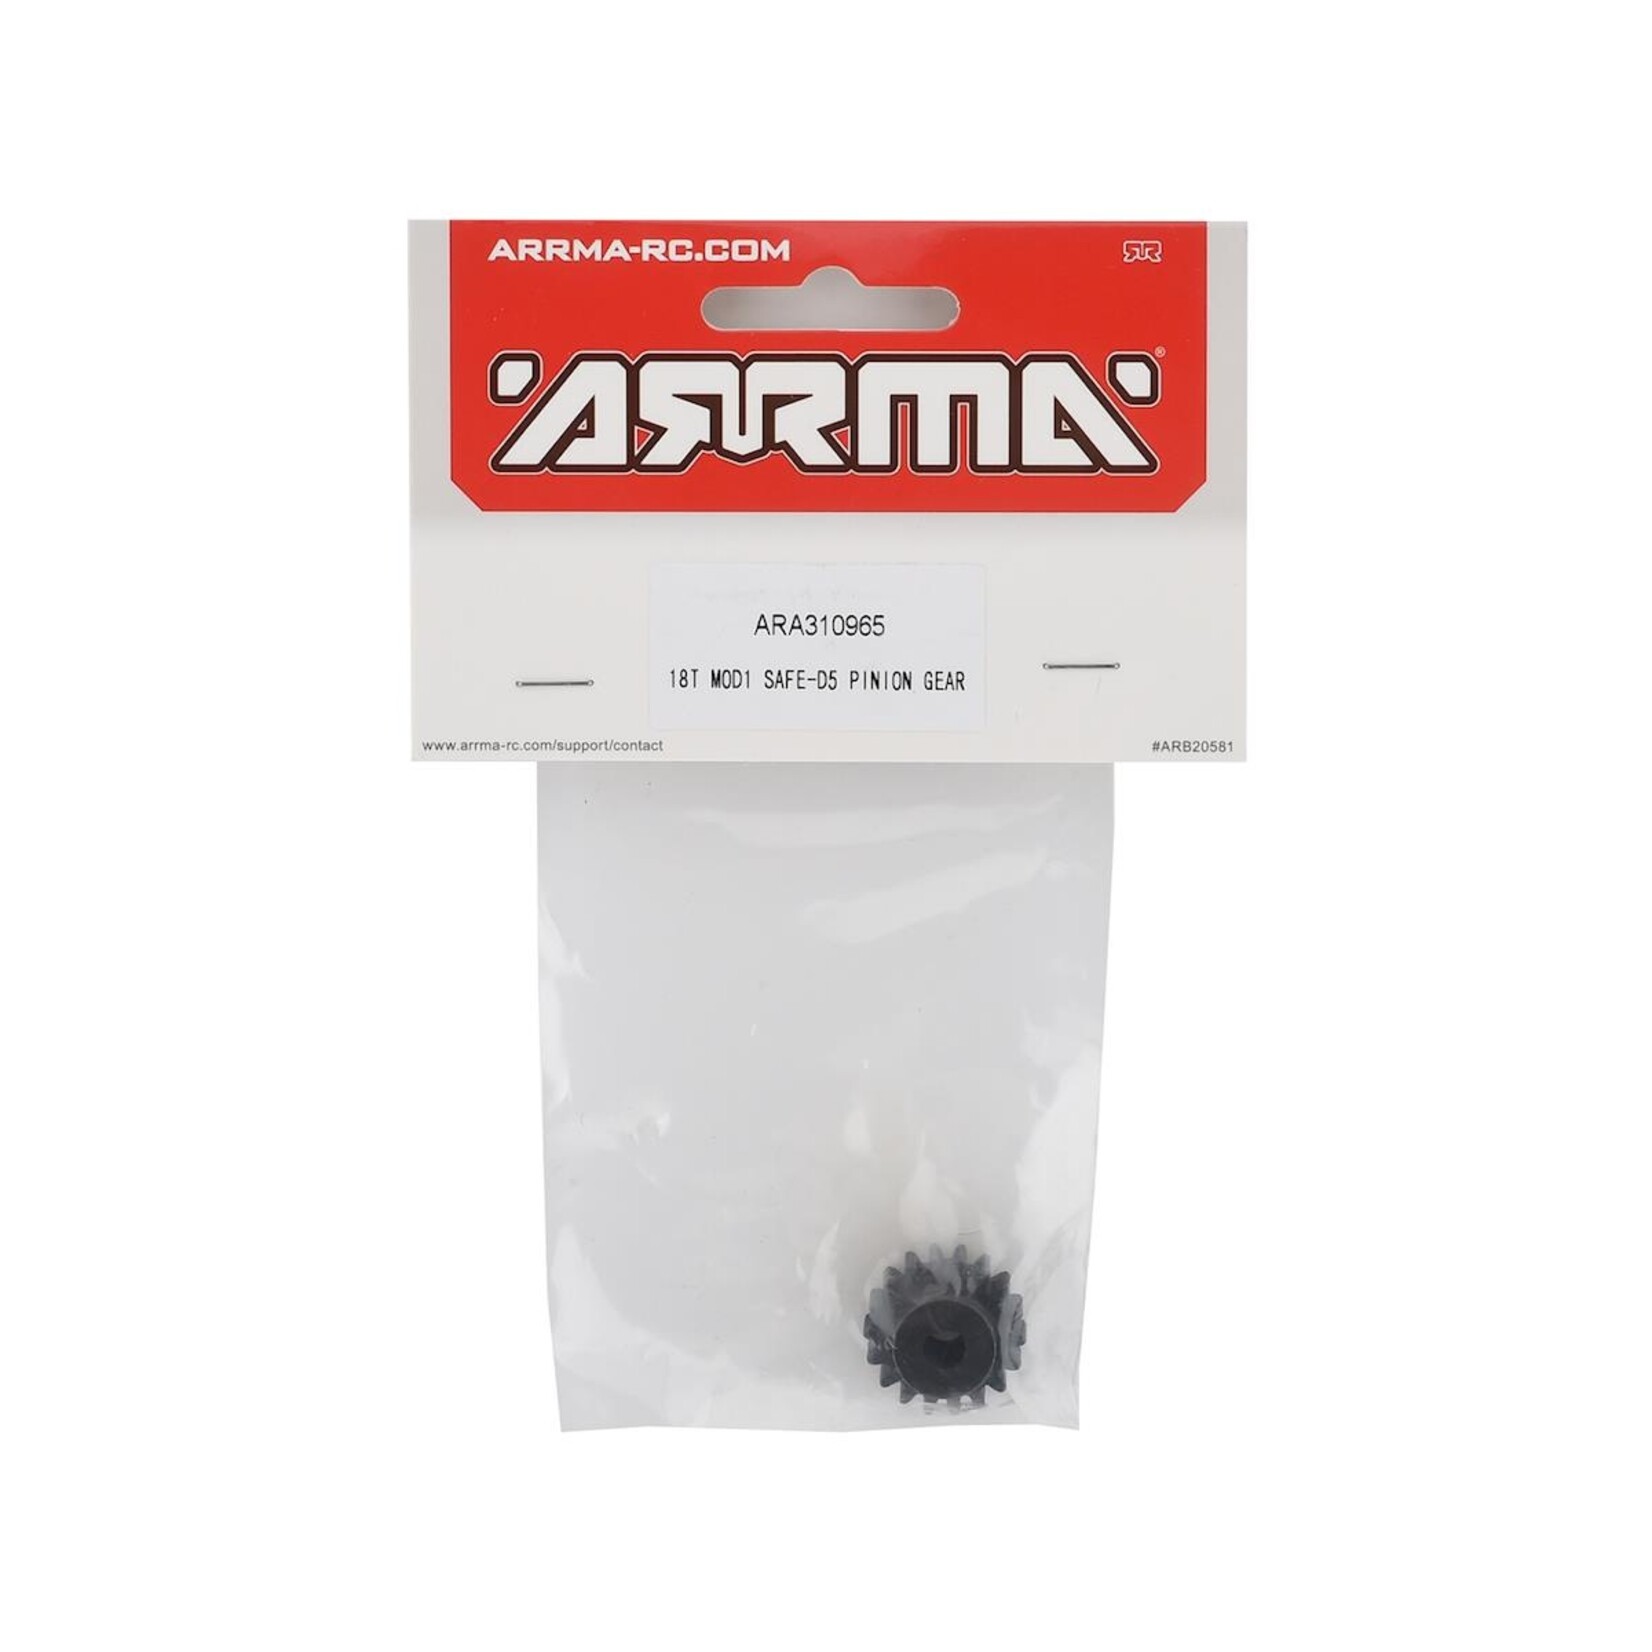 ARRMA Arrma Safe-D5 Mod1 Pinion Gear (18T) #ARA310963